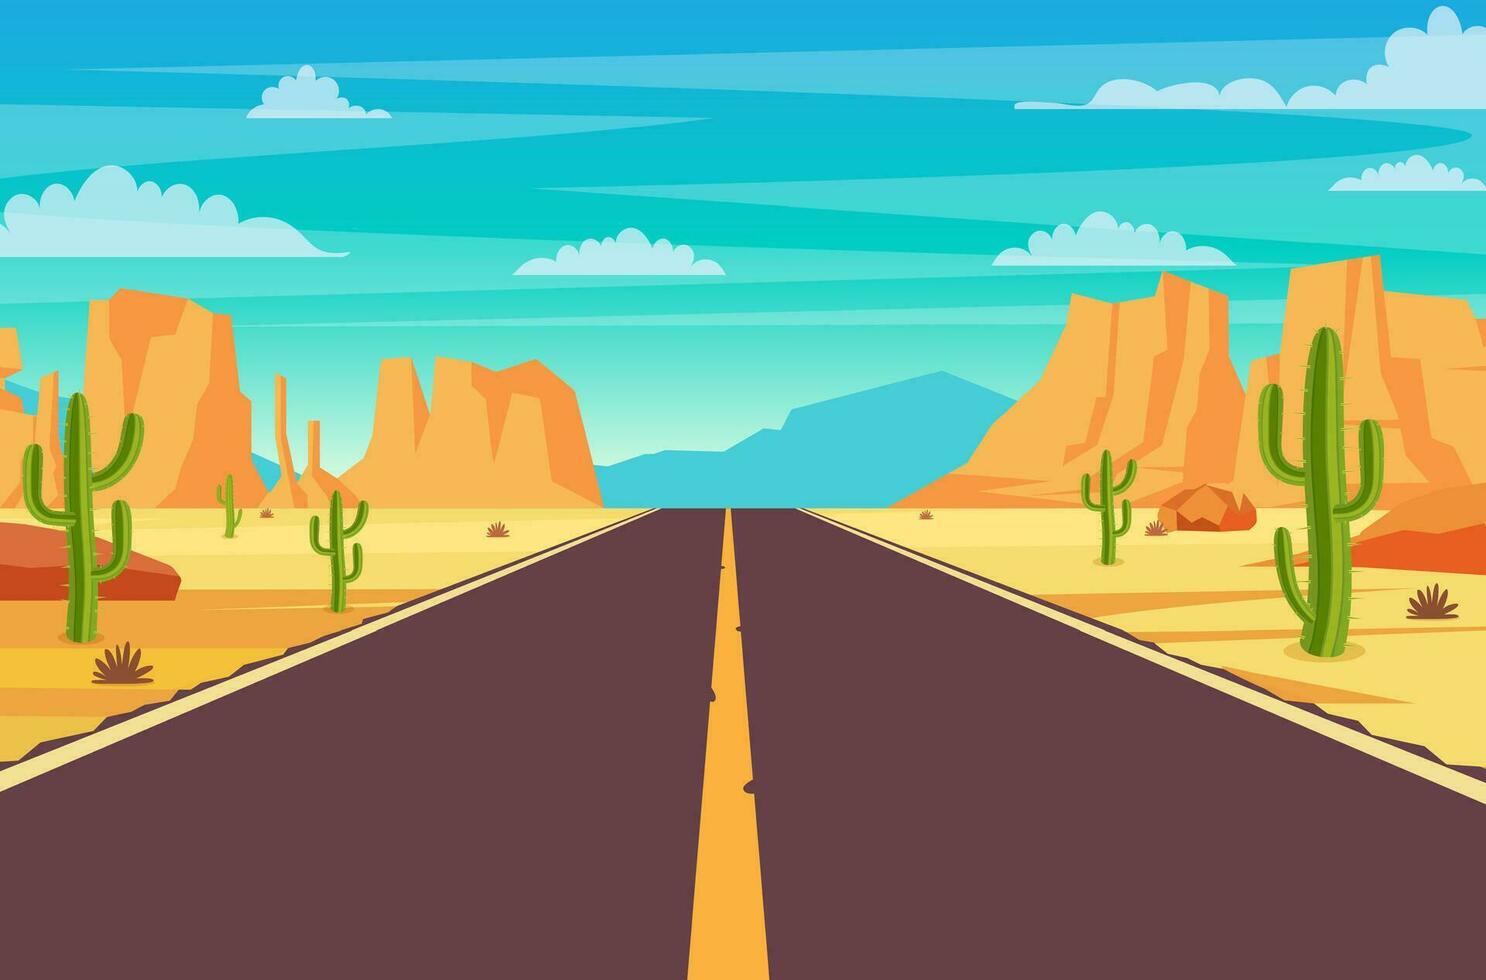 vide Autoroute route dans désert. sablonneux désert paysage avec route, rochers et cactus. été occidental américain paysage. Autoroute dans Arizona ou Mexique chaud sable. vecteur illustration dans plat style